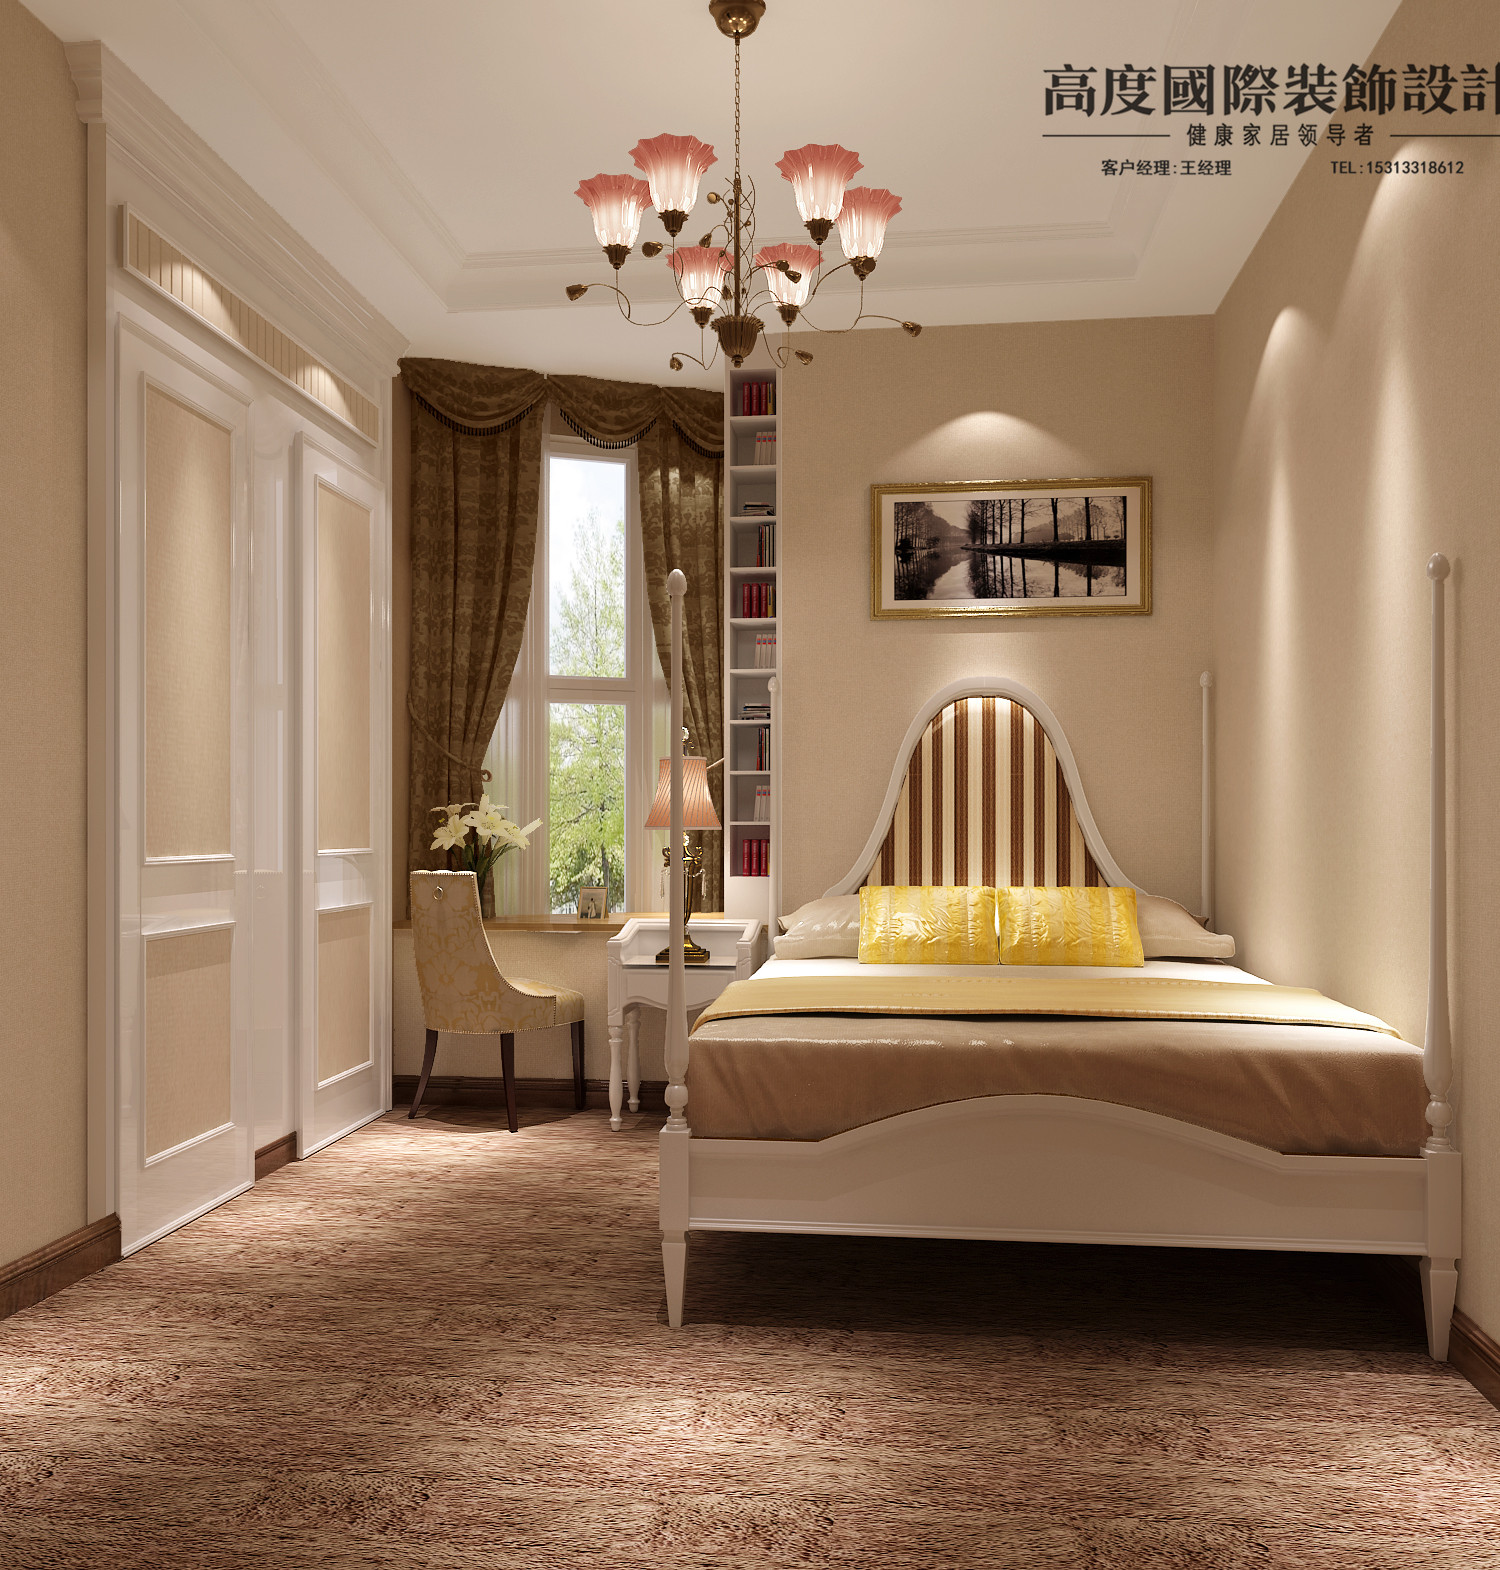 简约 欧式 三居 卧室图片来自北京高度国际装饰在御翠尚府142平米简欧风格的分享